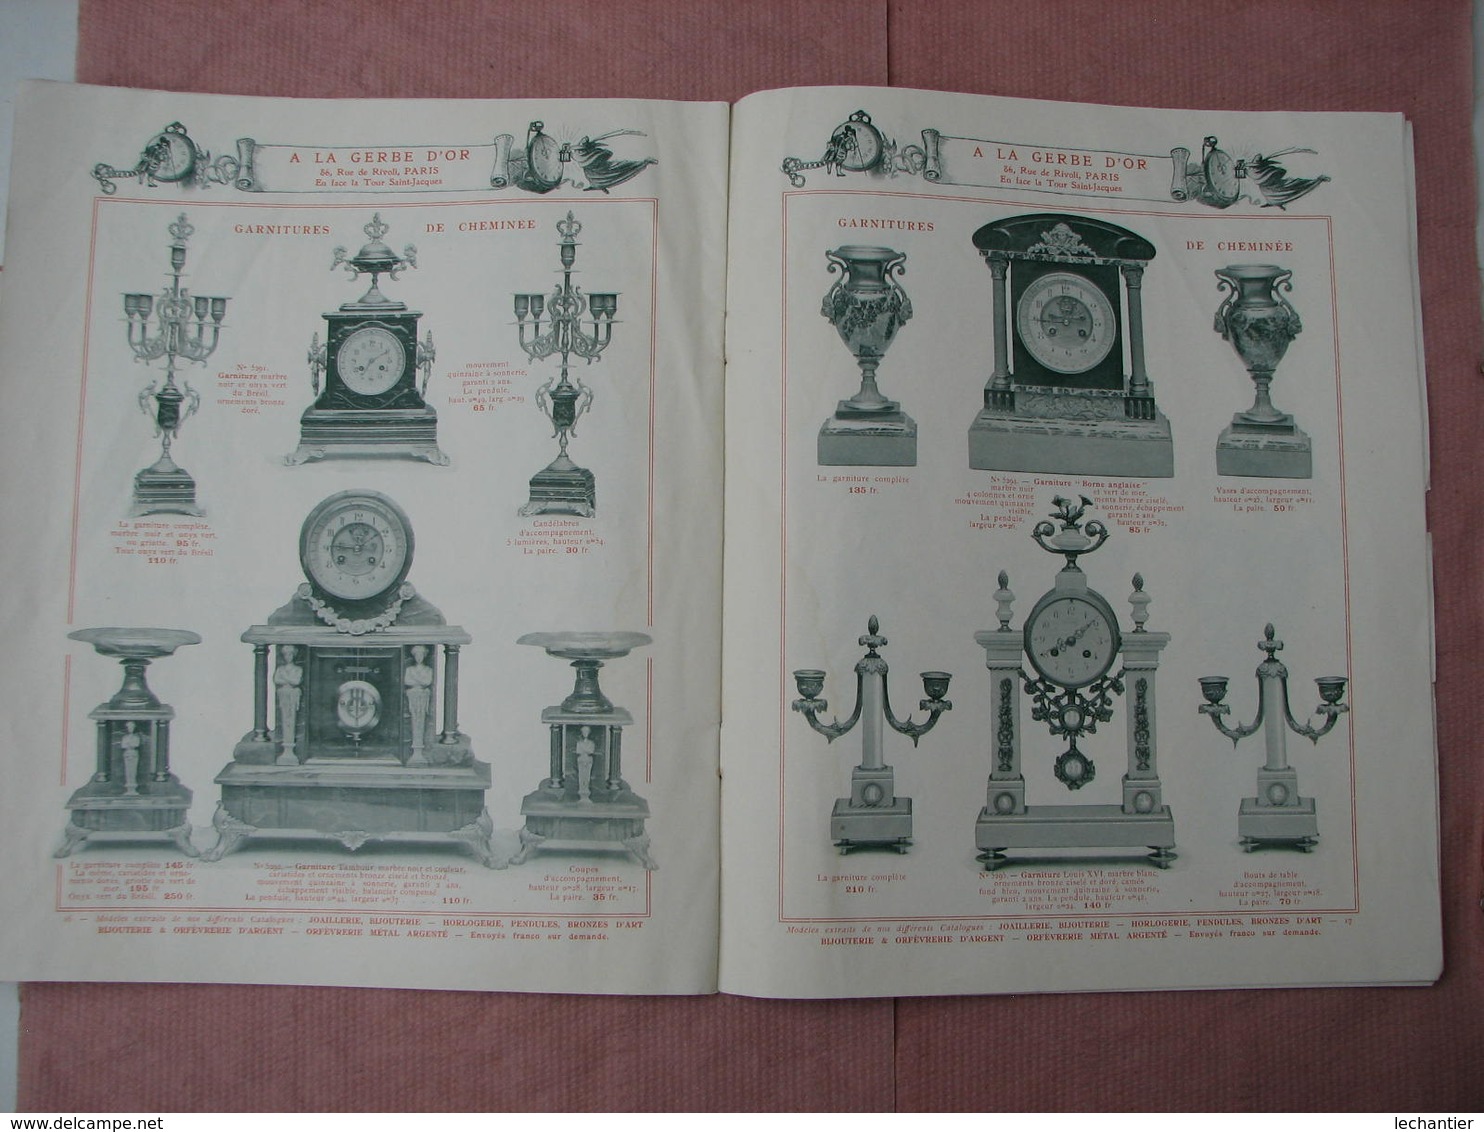 Maison de La Gerbe d'Or 1907 catalogue 20 pages 22X27 bijouterie, joallerie,horlogerie,bronzes, etc...